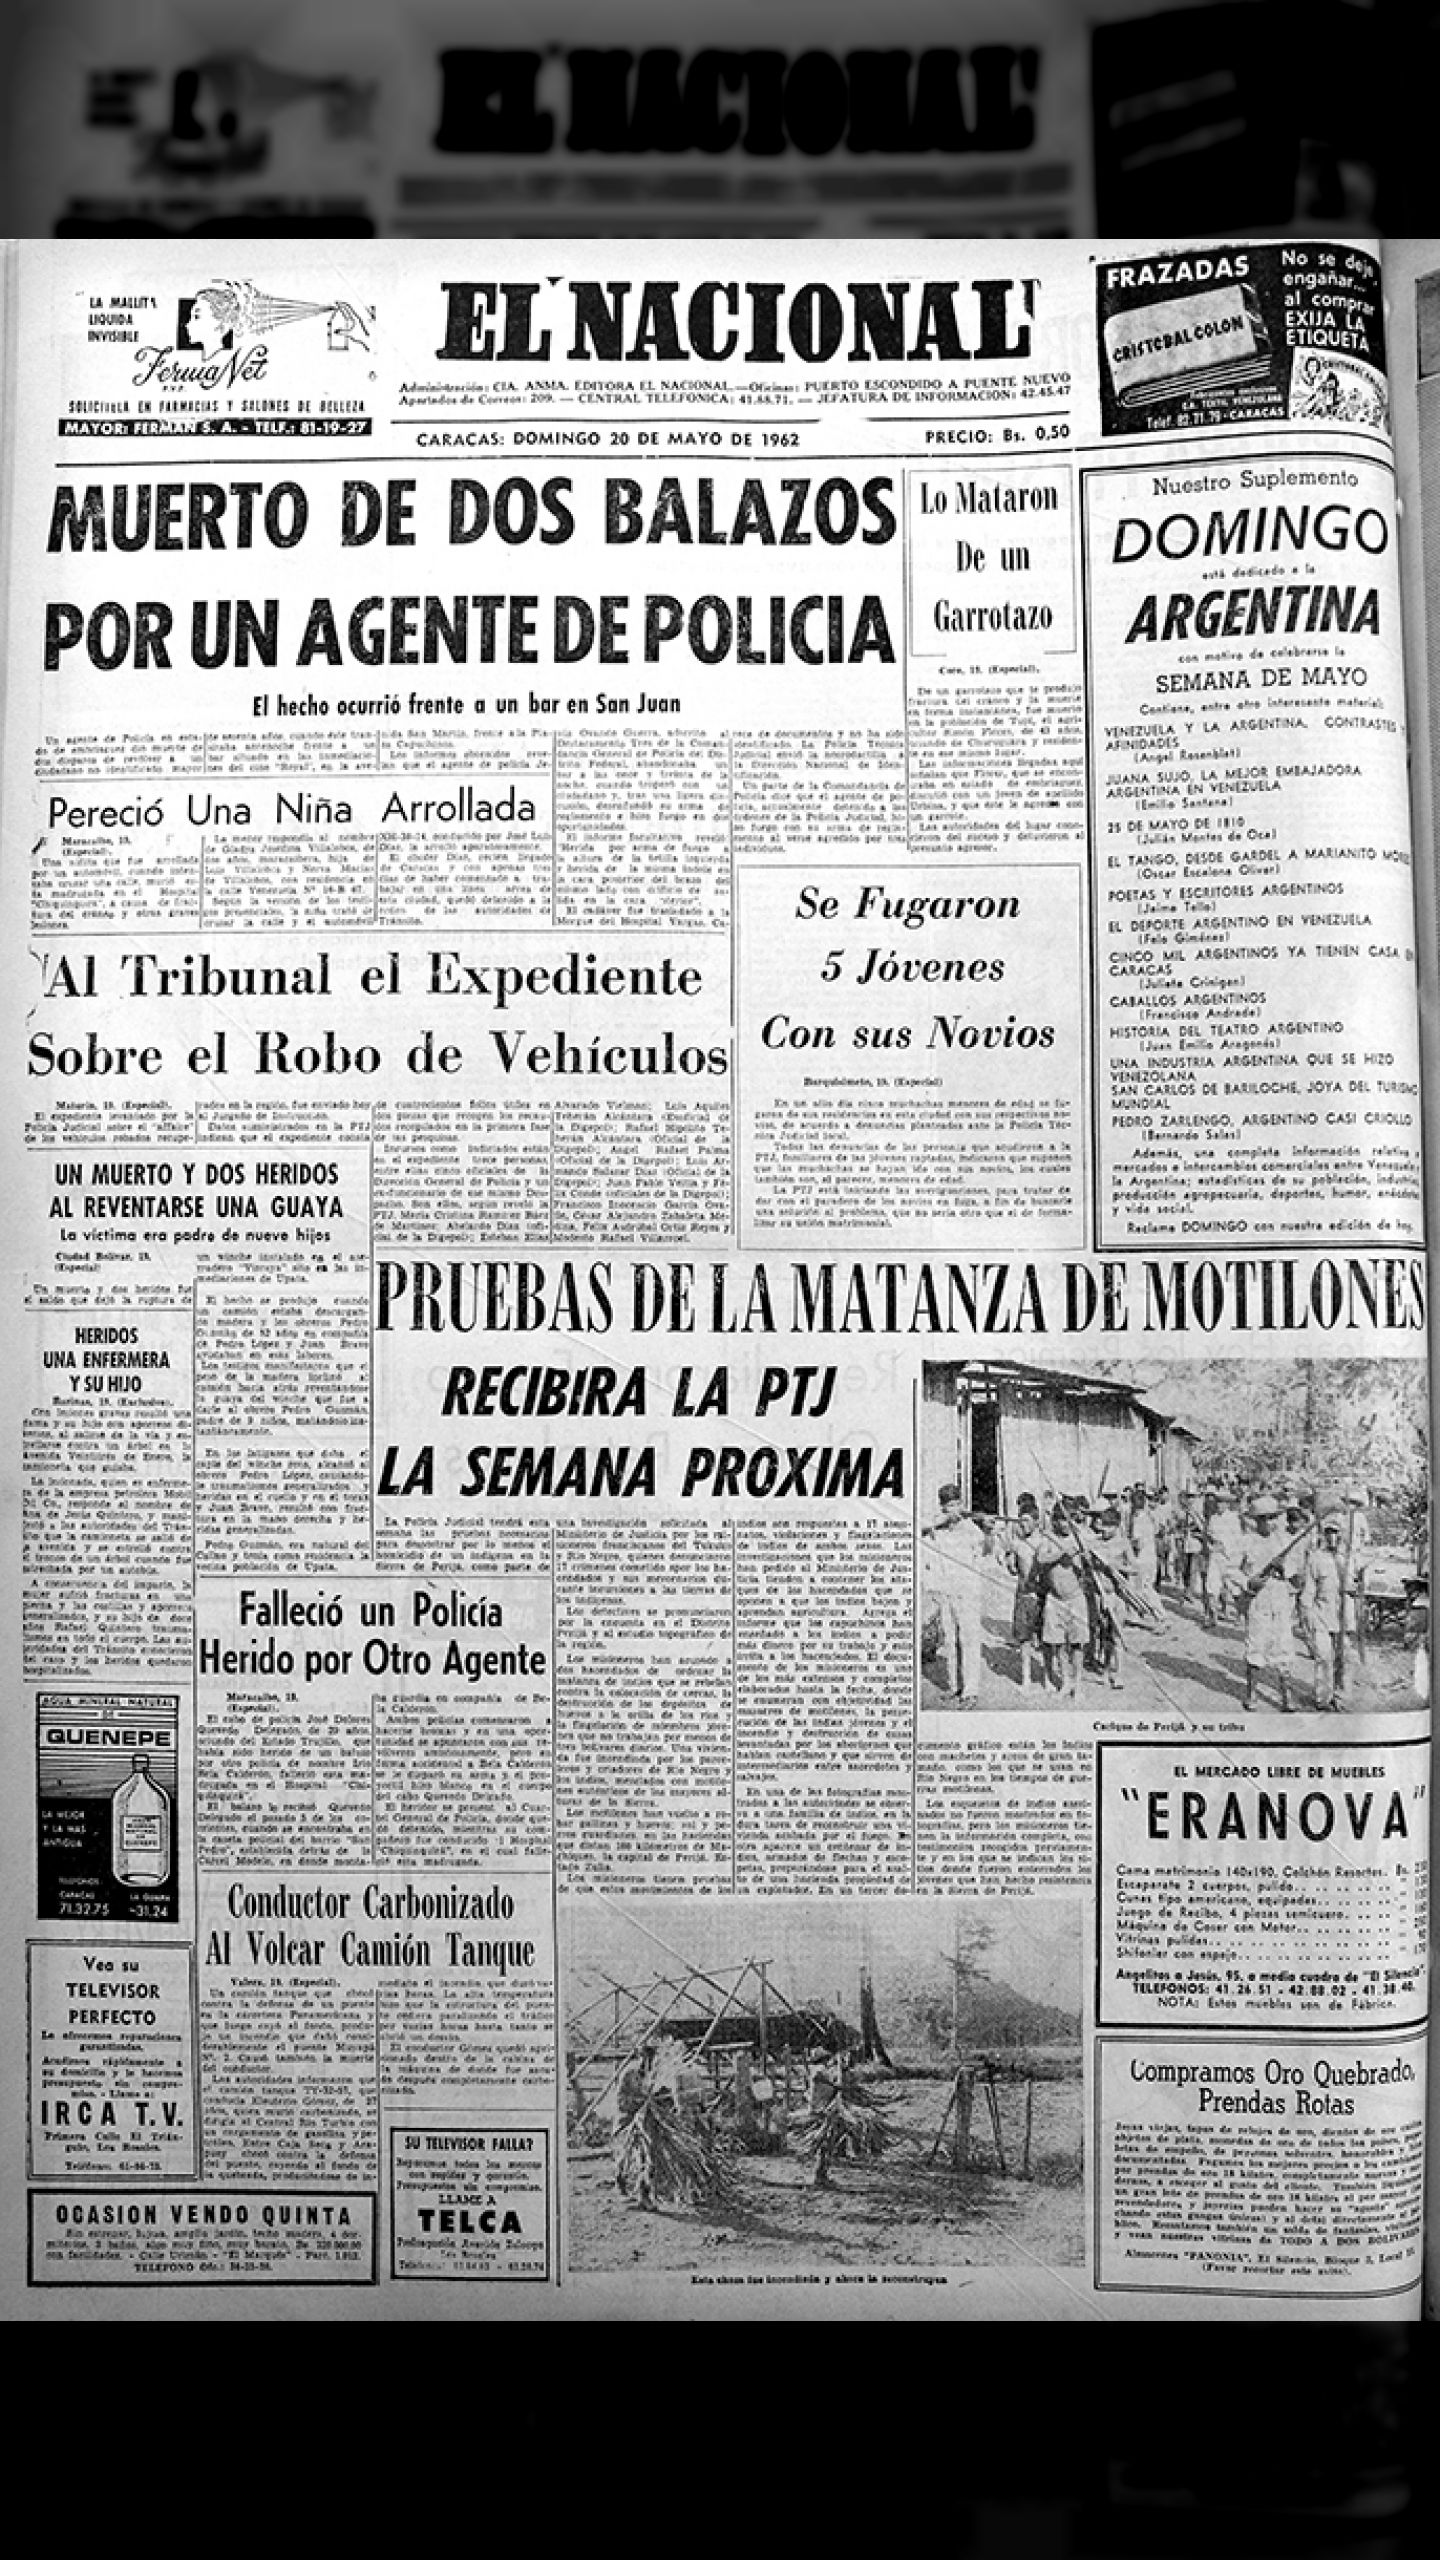 Mala praxis policial y asesinatos de aborígenes (El Nacional, 20 de mayo de 1962)